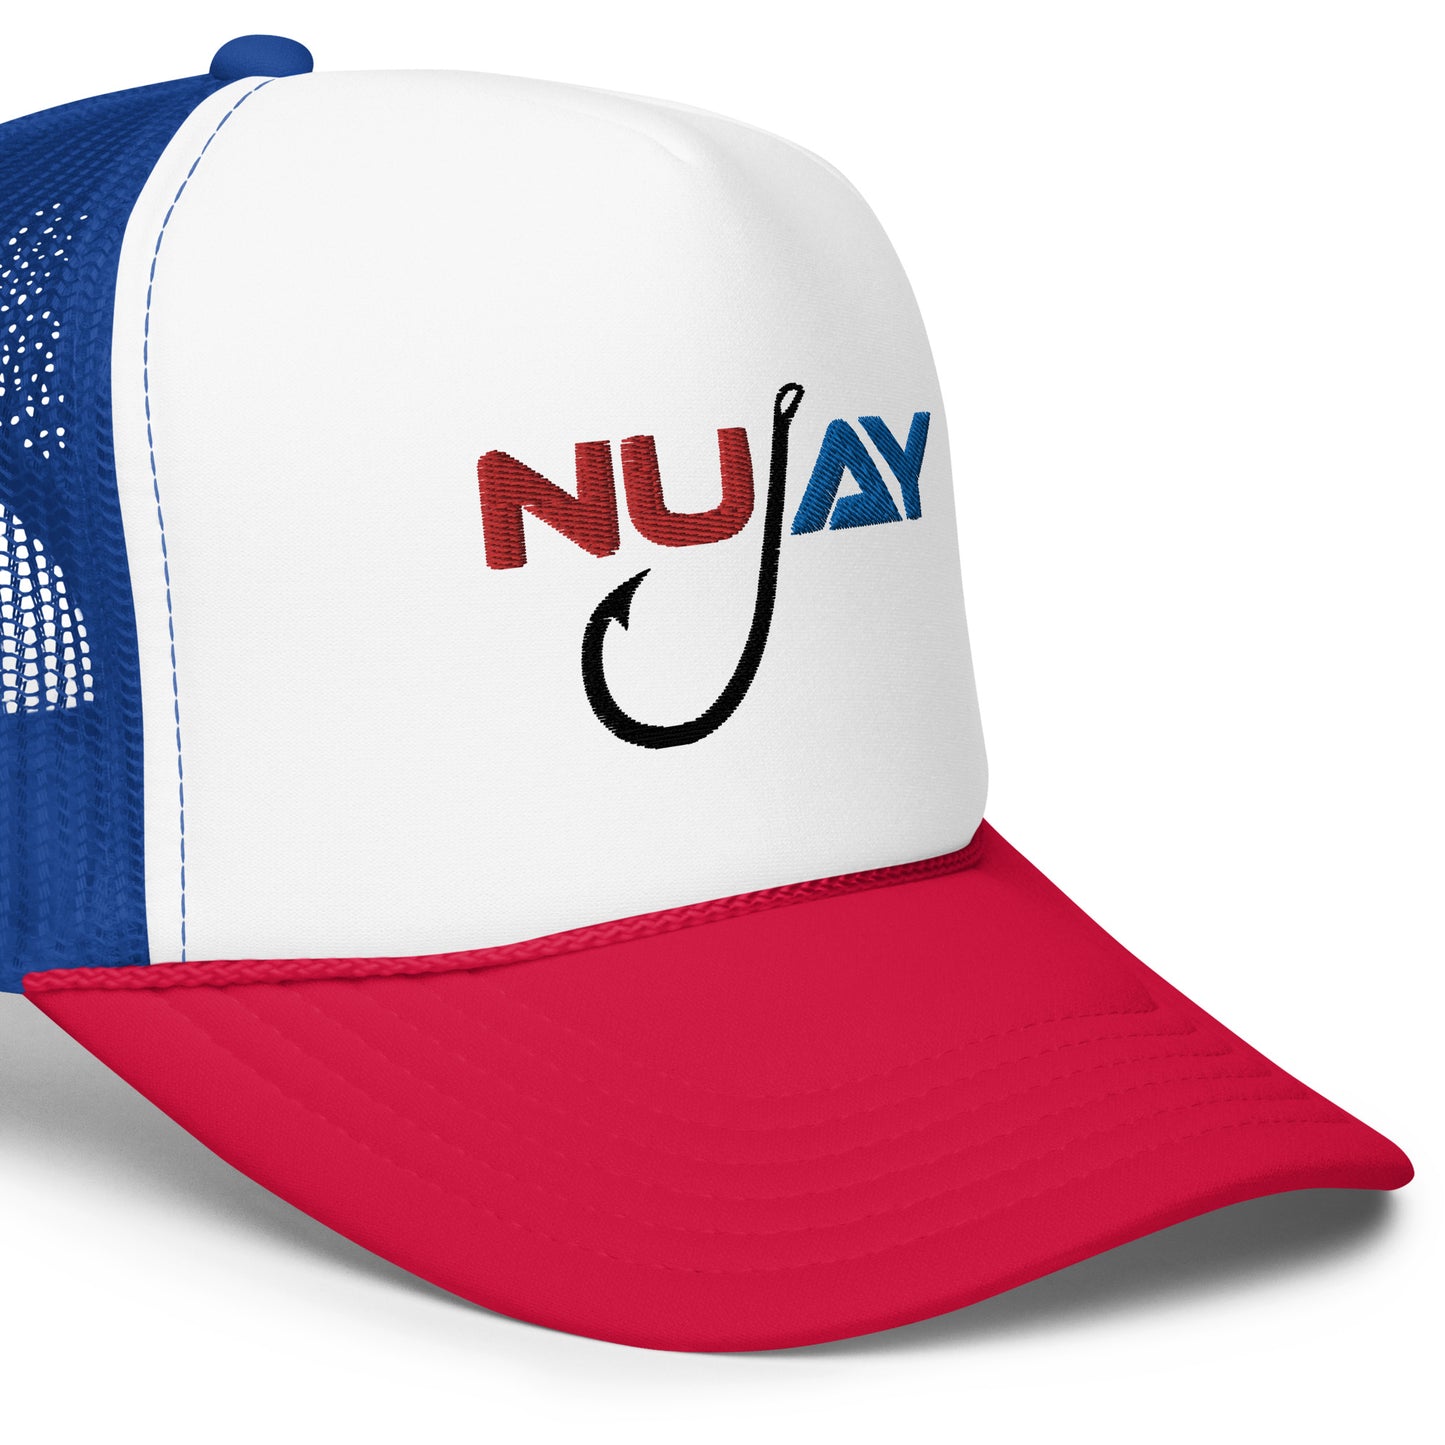 Nujay Outdoors Red, White, & Blue Foam trucker hat